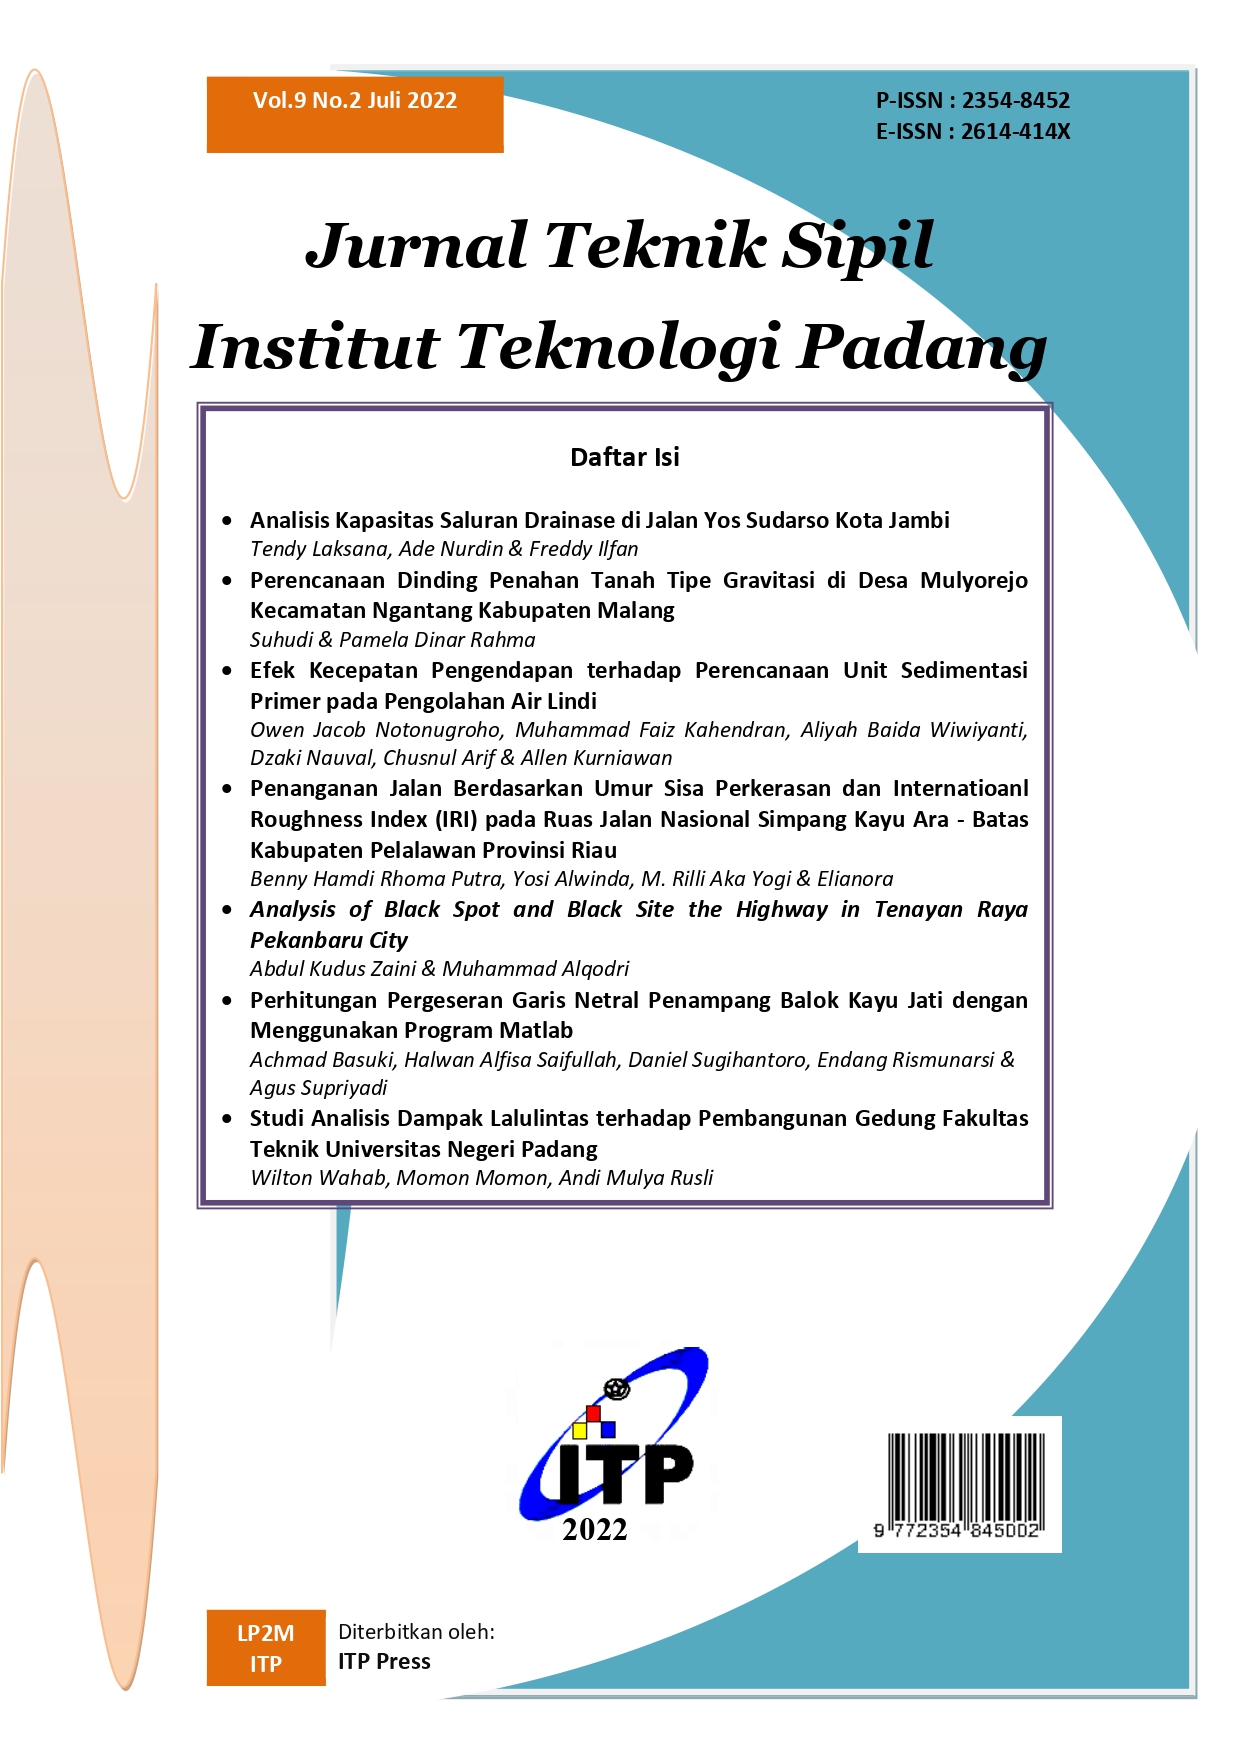 					Lihat Vol 9 No 2 (2022): Jurnal Teknik Sipil Institut Teknologi Padang
				